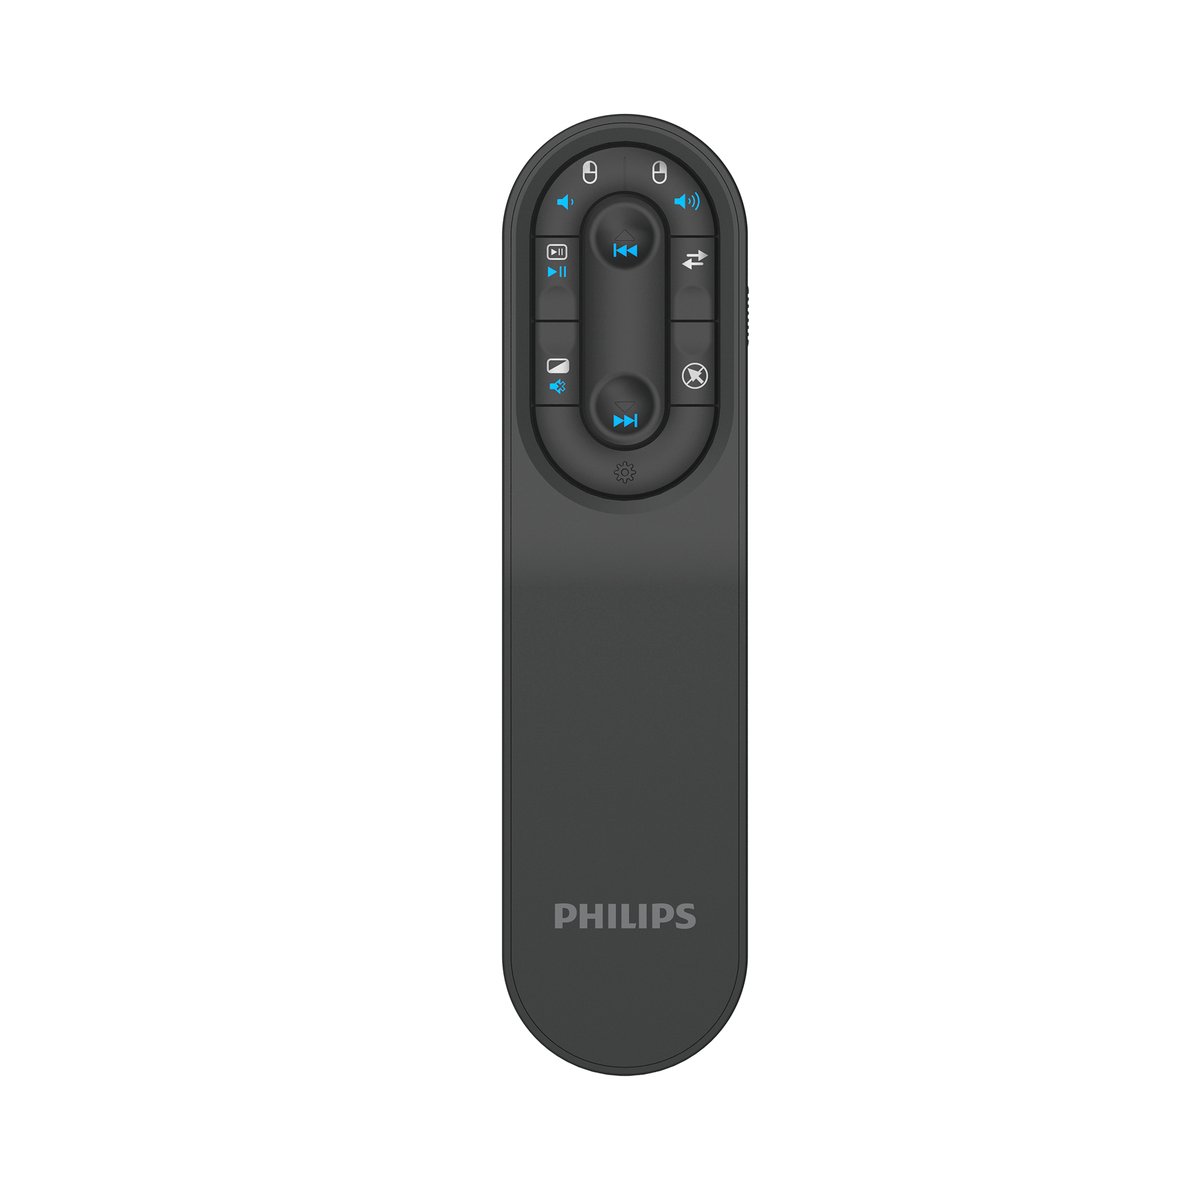 Philips SPT9614 Bluetooth Wireless Presenter